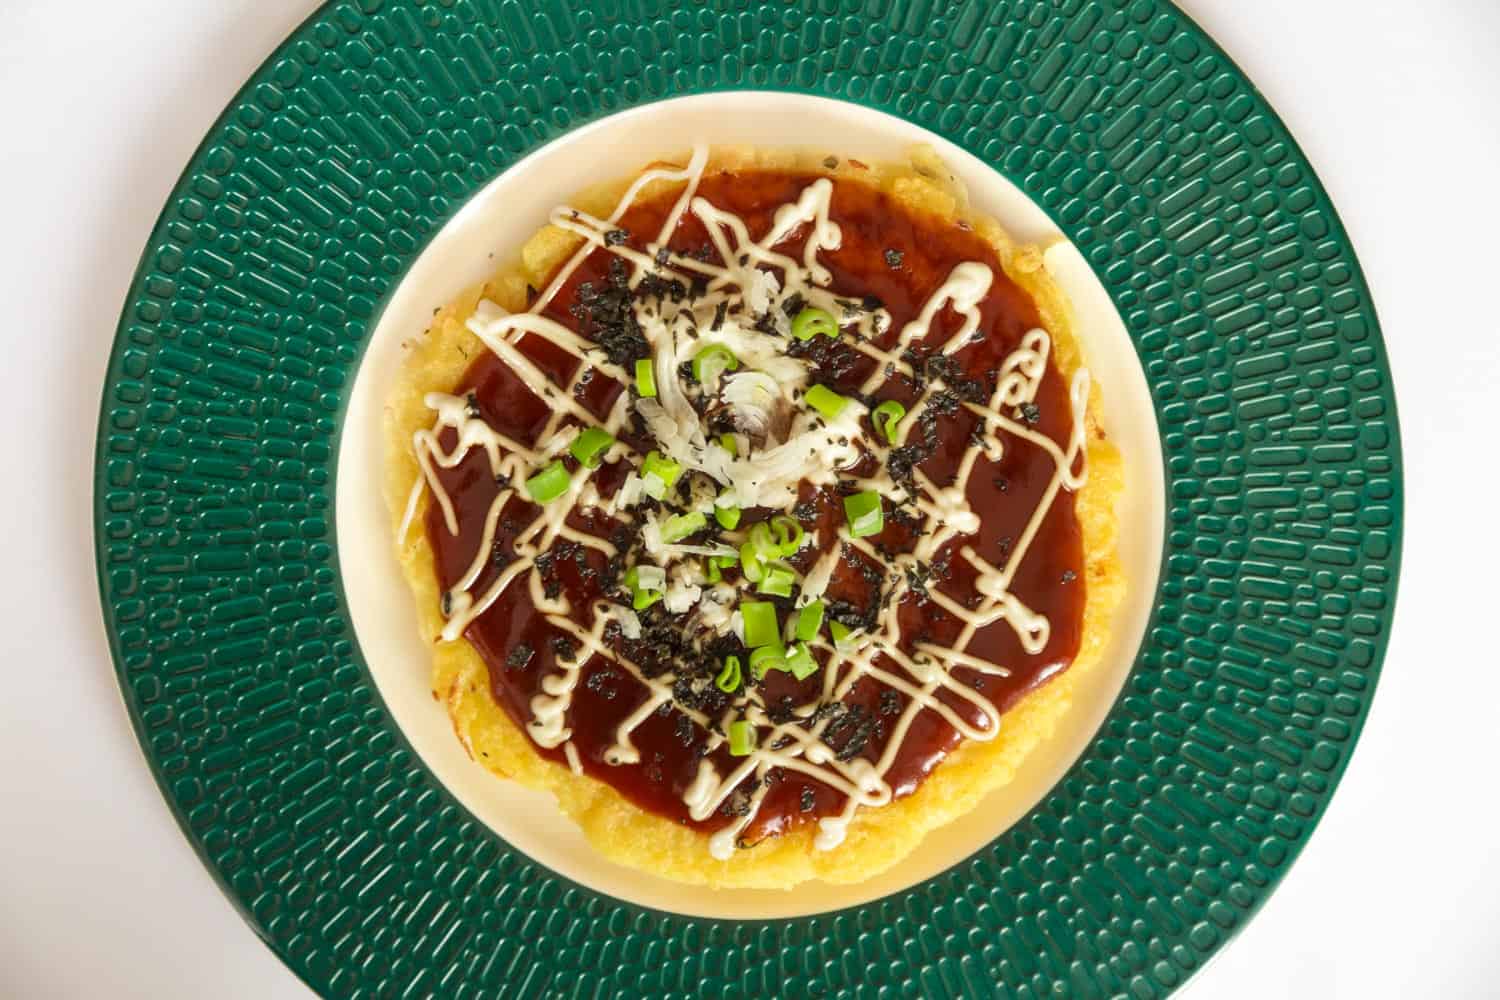 Kansai style vegan okonomiyaki